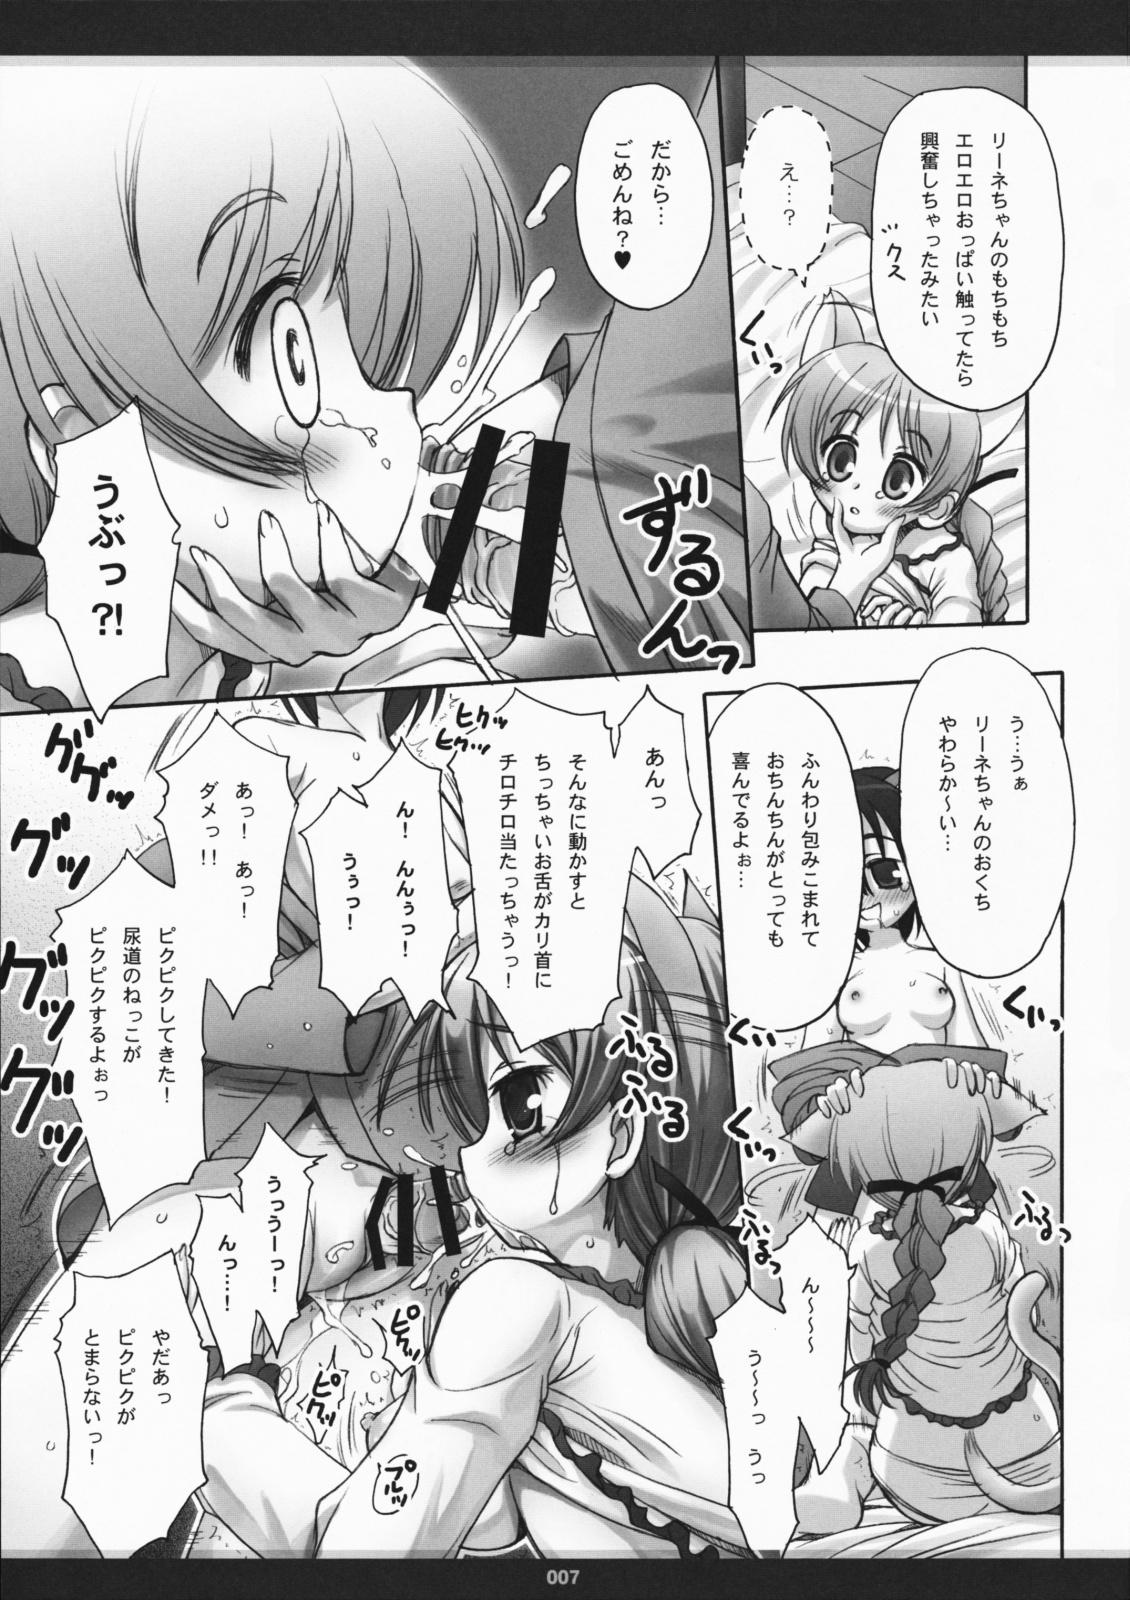 Spanking Hoshifuru Yoru ni Oppai o, Kimi to - Strike witches Asshole - Page 6